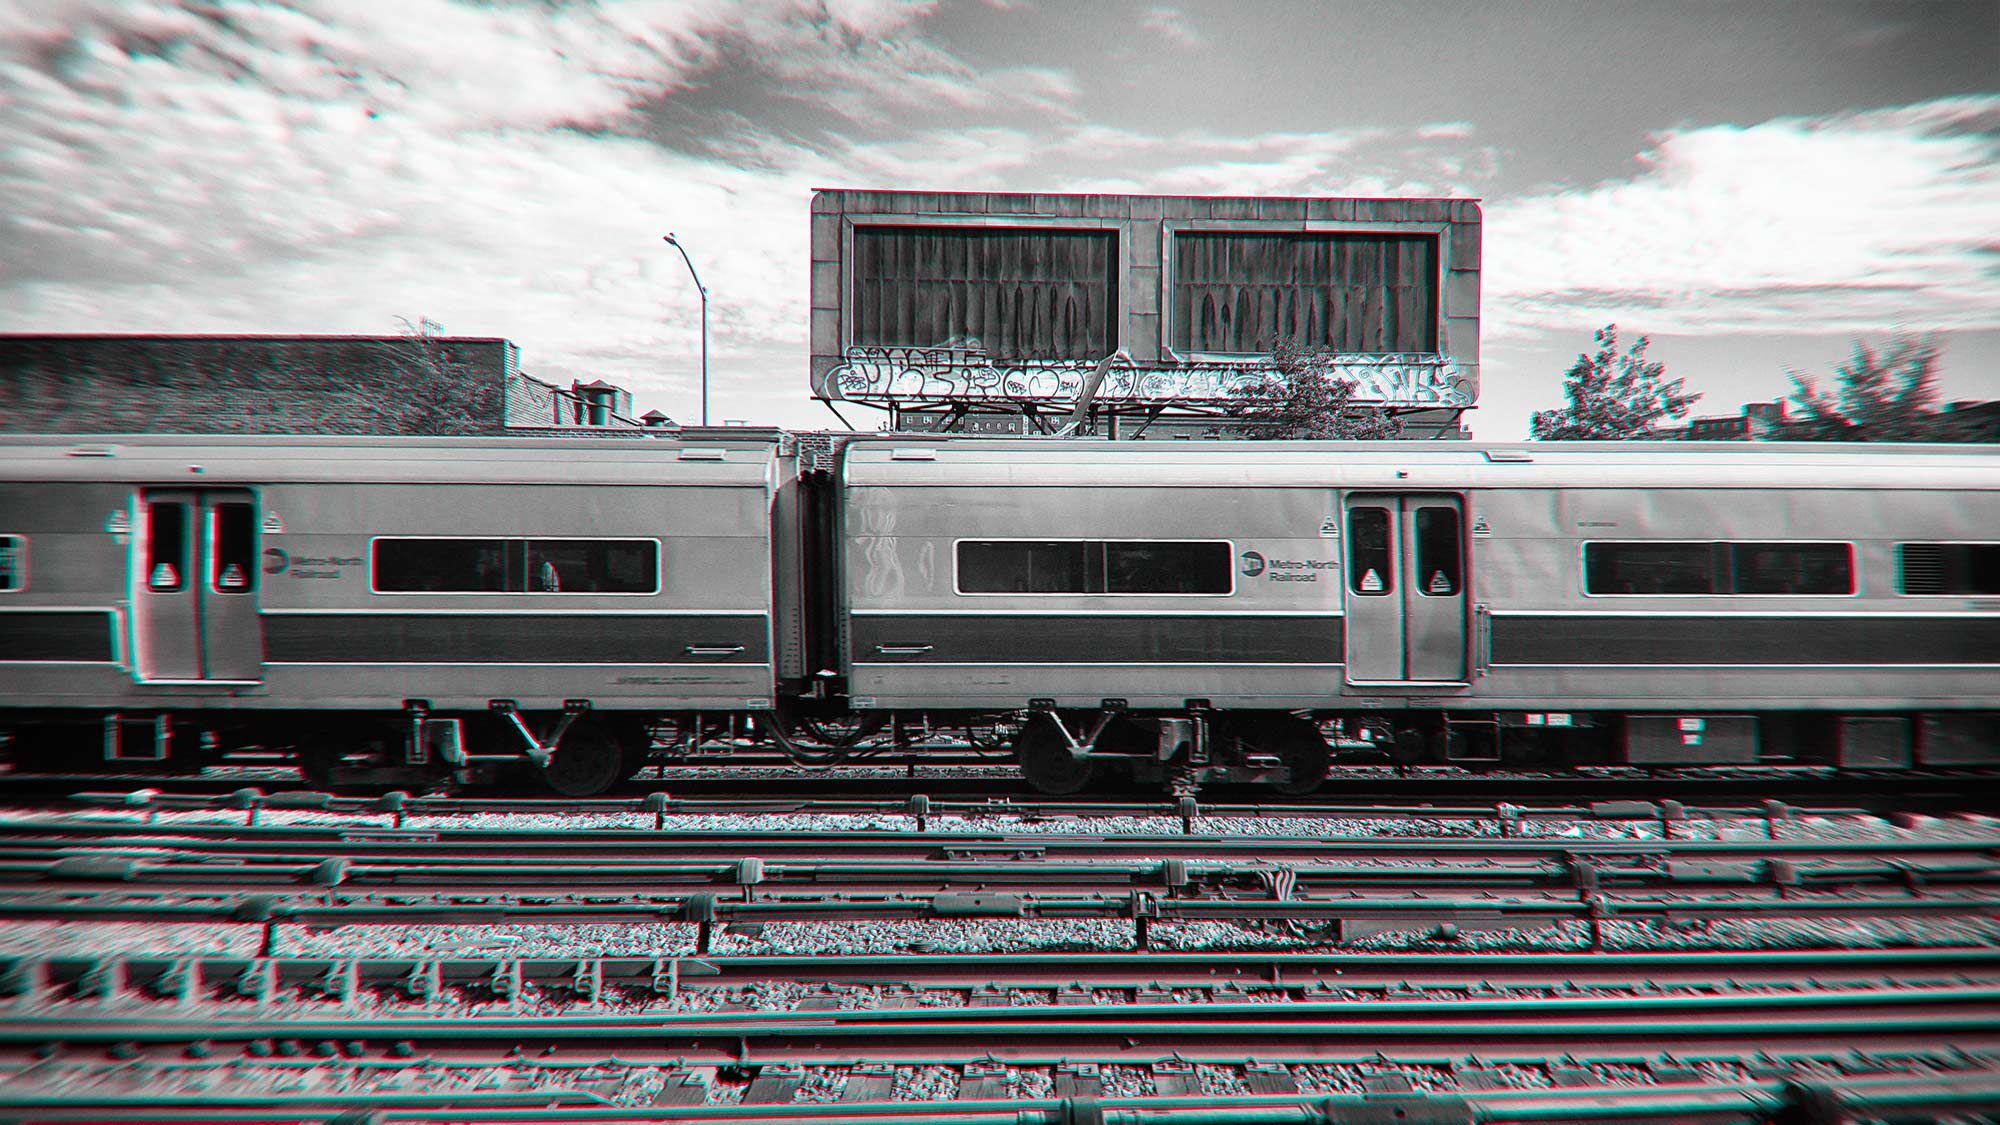  Train ©2017 bret wills